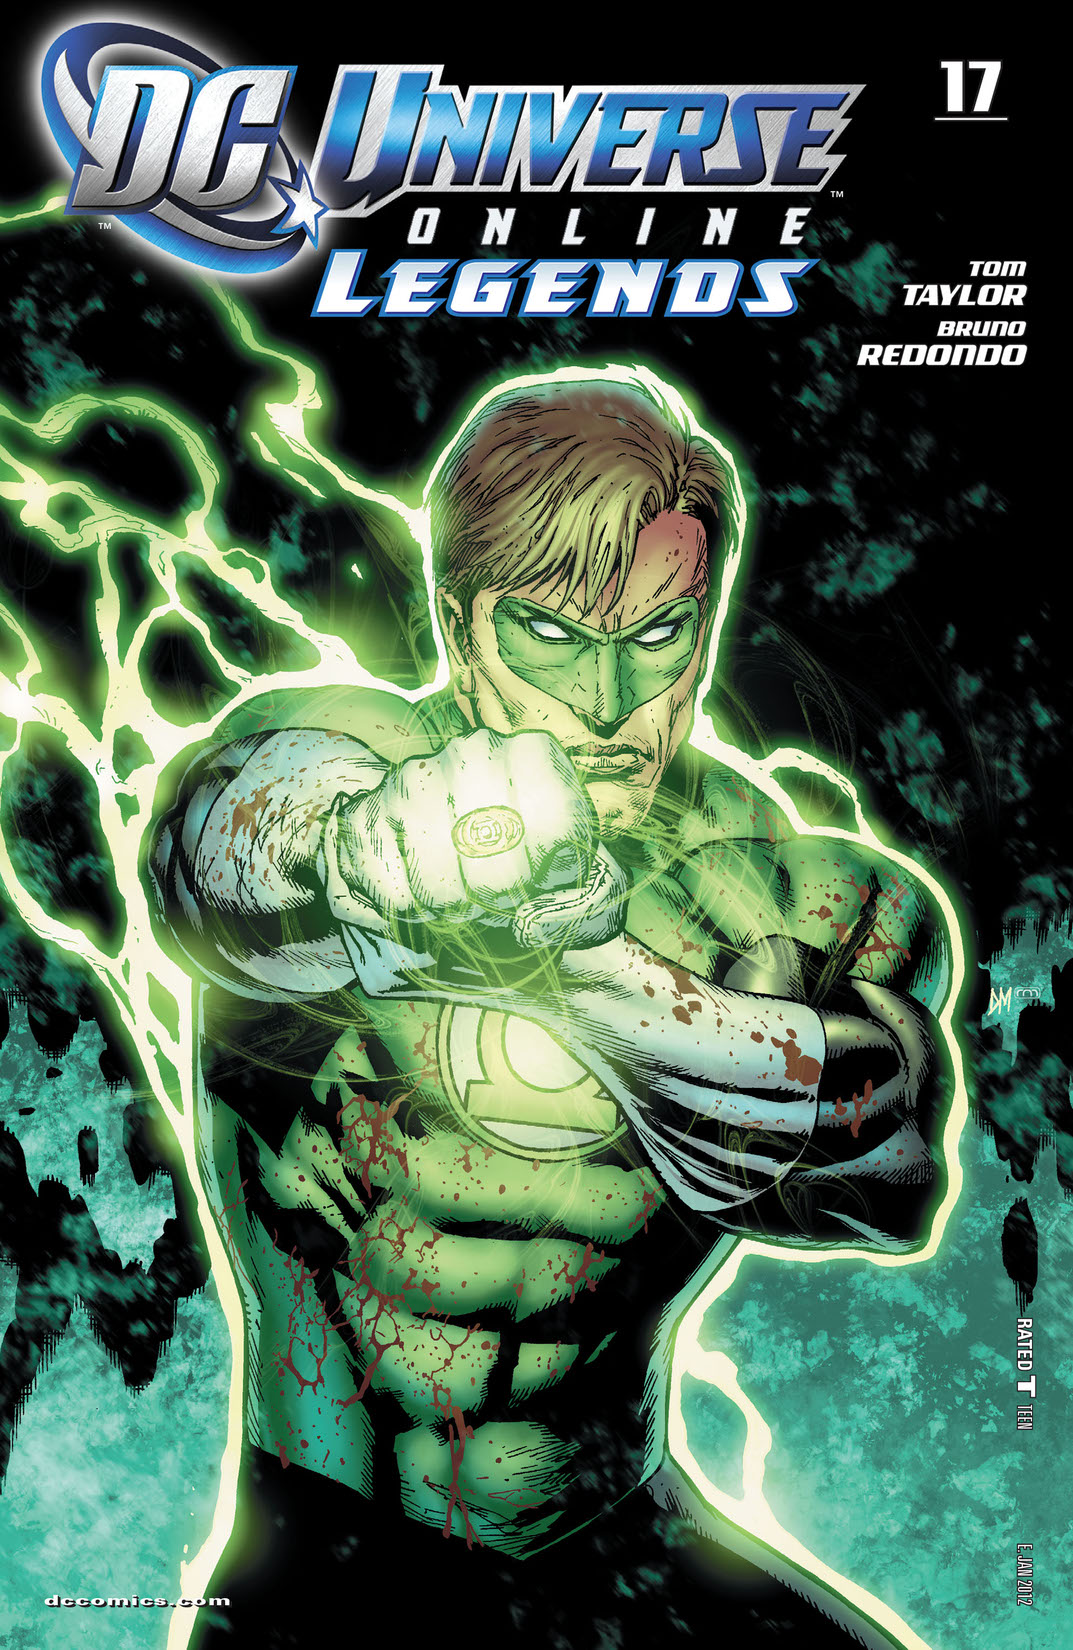 DC Universe Online Legends #17 preview images